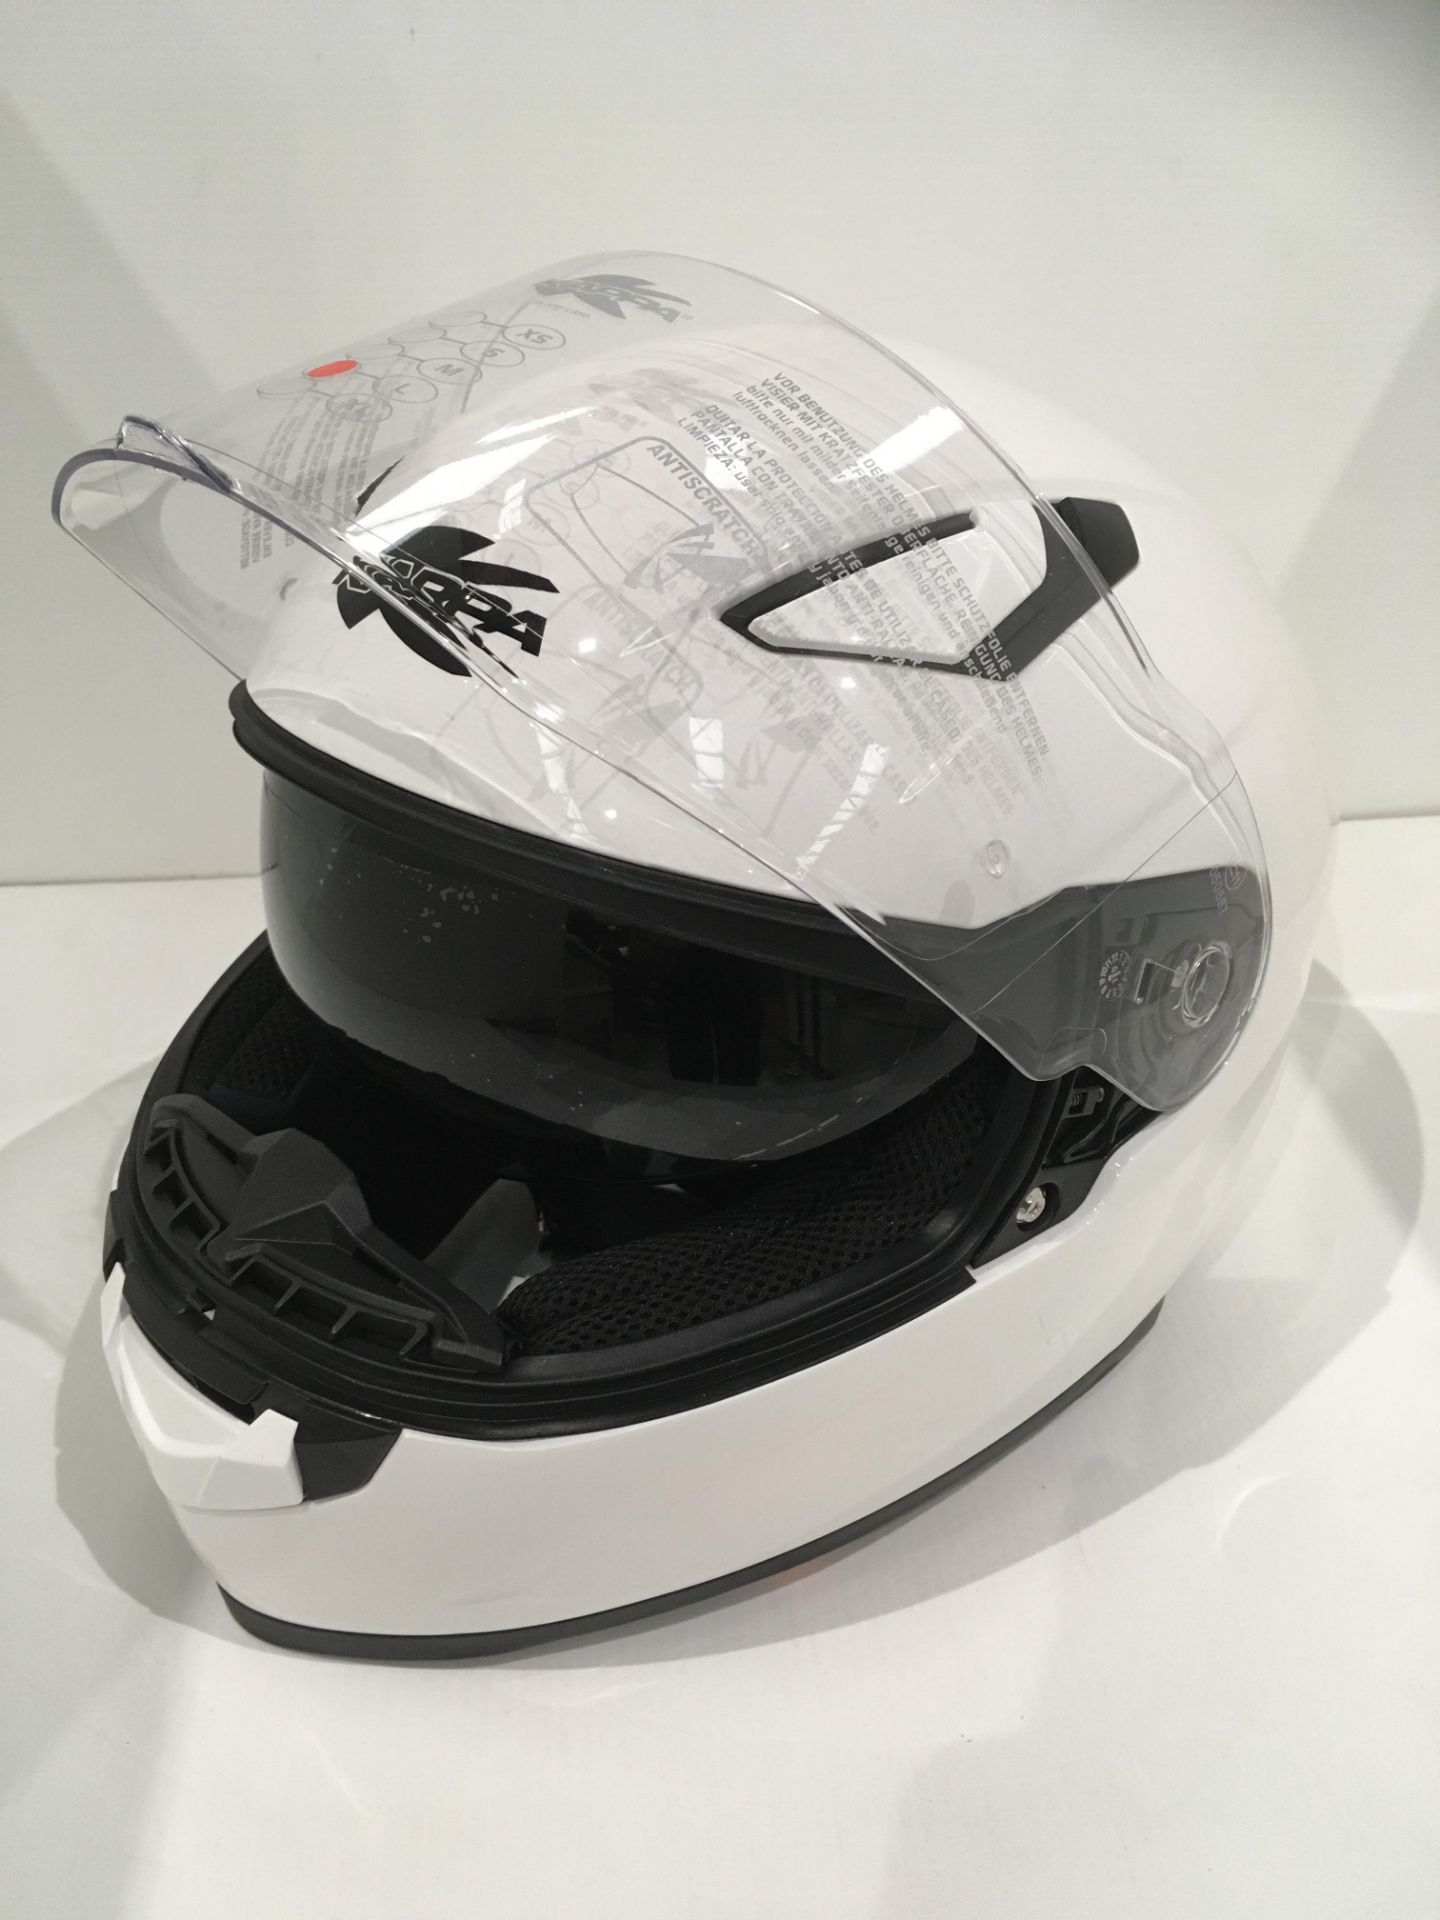 Kappa KV-41 motorbike helmet in gloss white - size L (60cm) (faulty inner sun visor) - Image 2 of 4